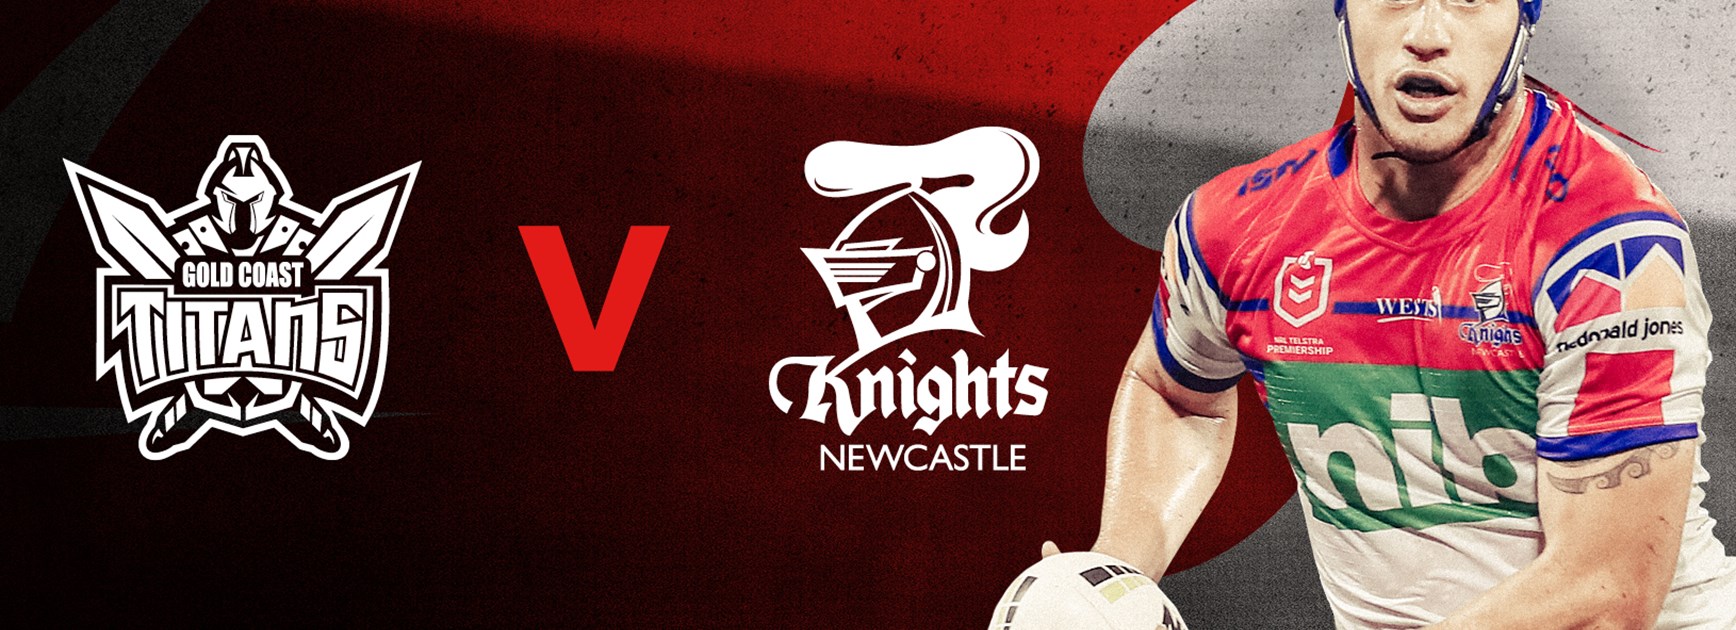 Knights v Titans Round 6 NRL team